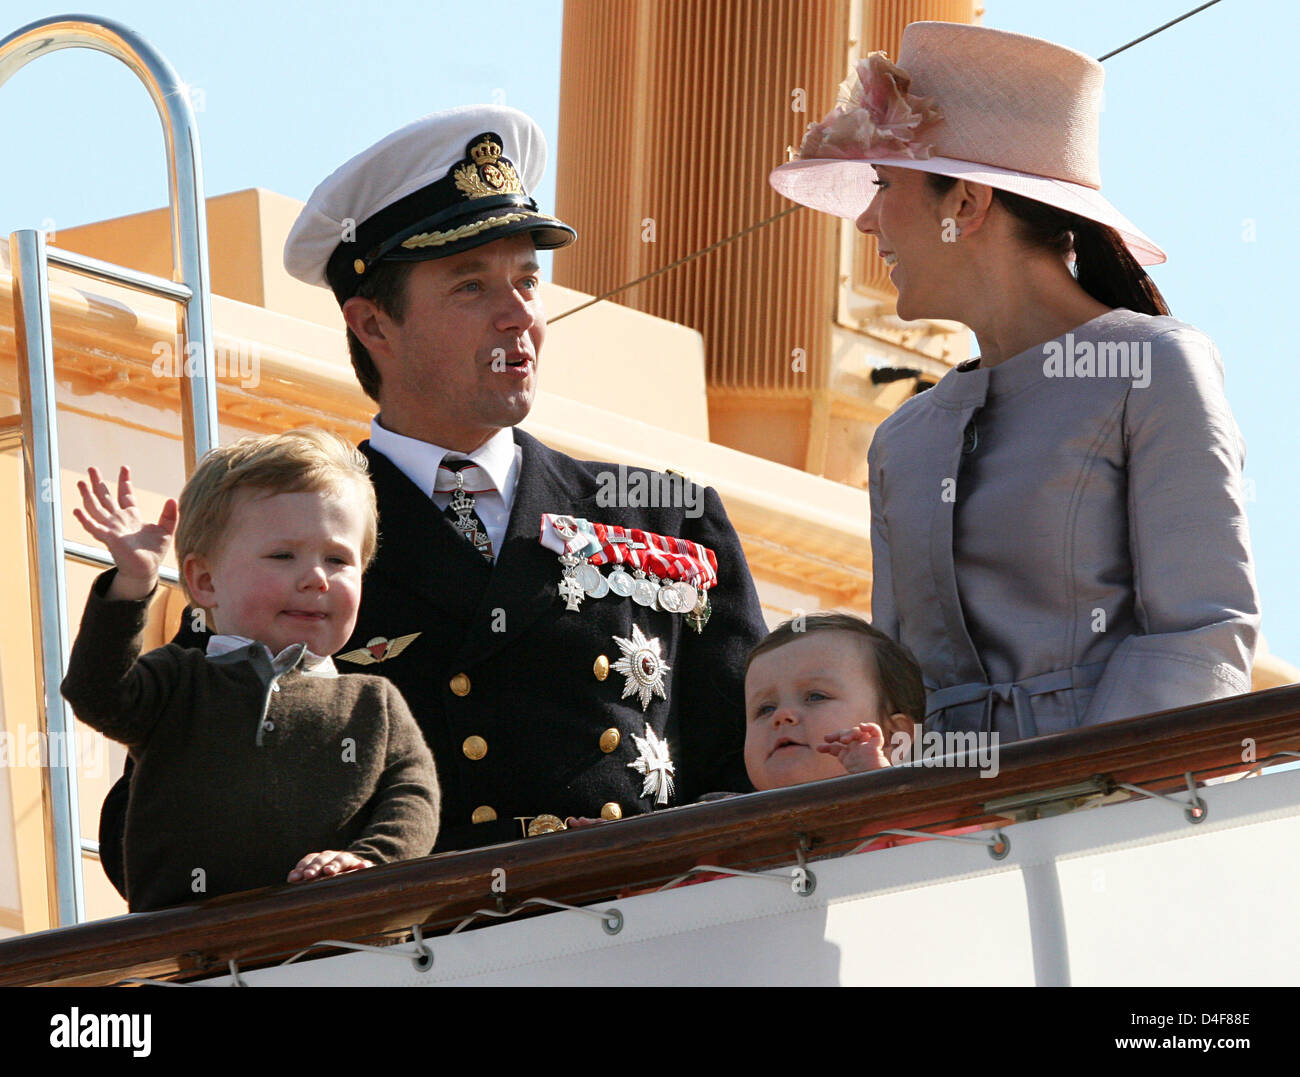 Le Prince héritier Frederik et la princesse Mary de Danemark et leurs enfants Princesse Isabella et Prince Christian (L) arriver à Svendborg, Danemark, 18 juin 2008. La famille royale est sur une croisière d'été de trois jours à travers le Danemark du Sud sur son yacht "annebrog'. Photo : Albert Nieboer (Pays-Bas) Banque D'Images